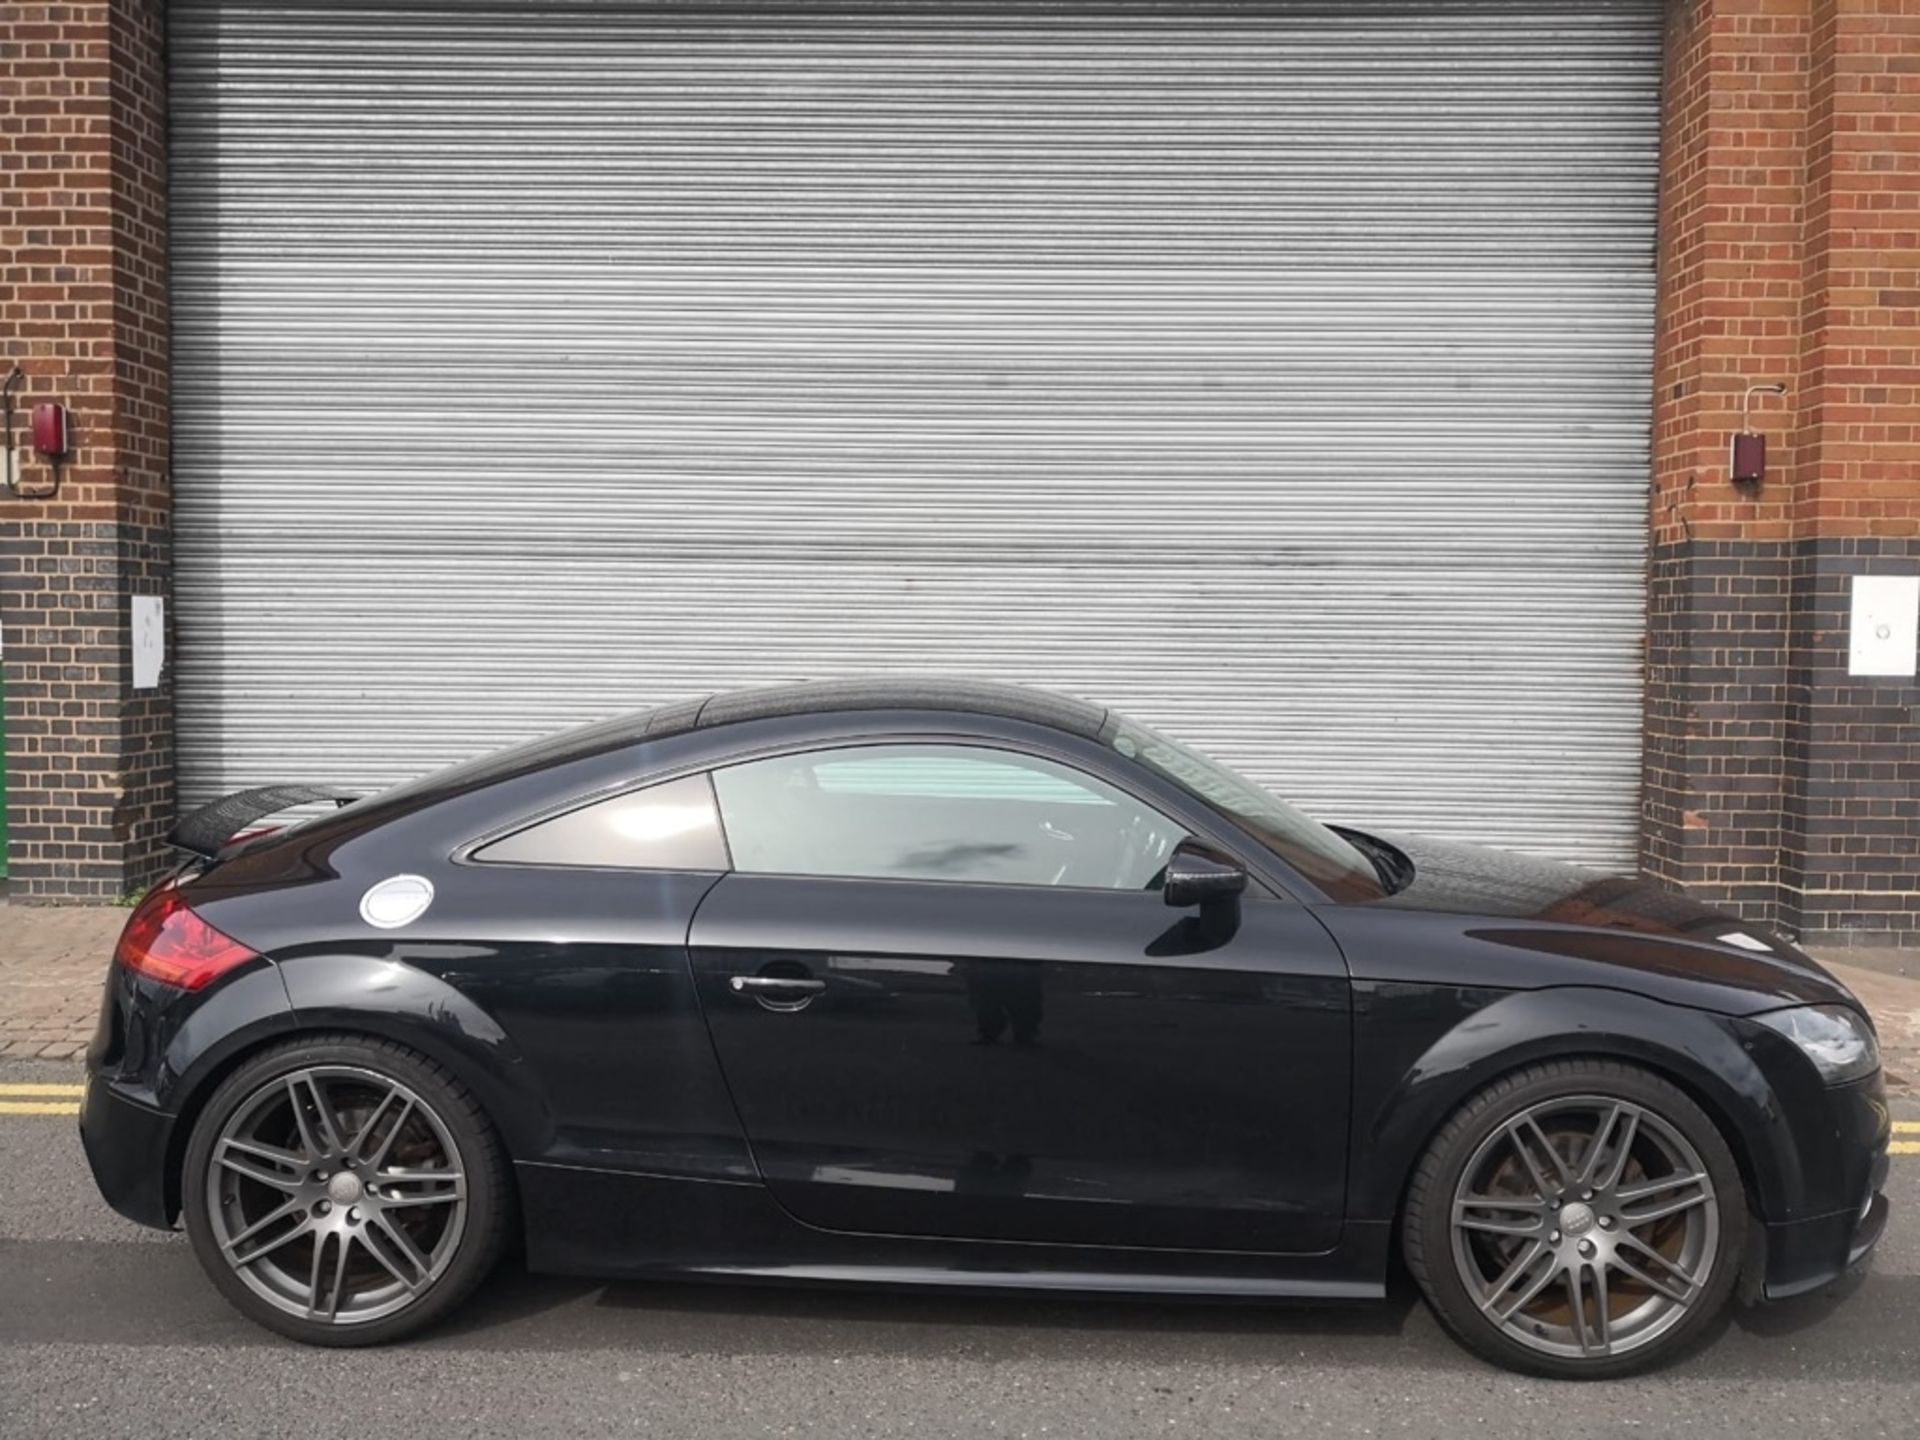 Audi TT 2.0 TDI – Manual – Diesel – 2011- Black Reg: BC11 WFM – 2011 Mileage: 107,000 MOT: 28-04-